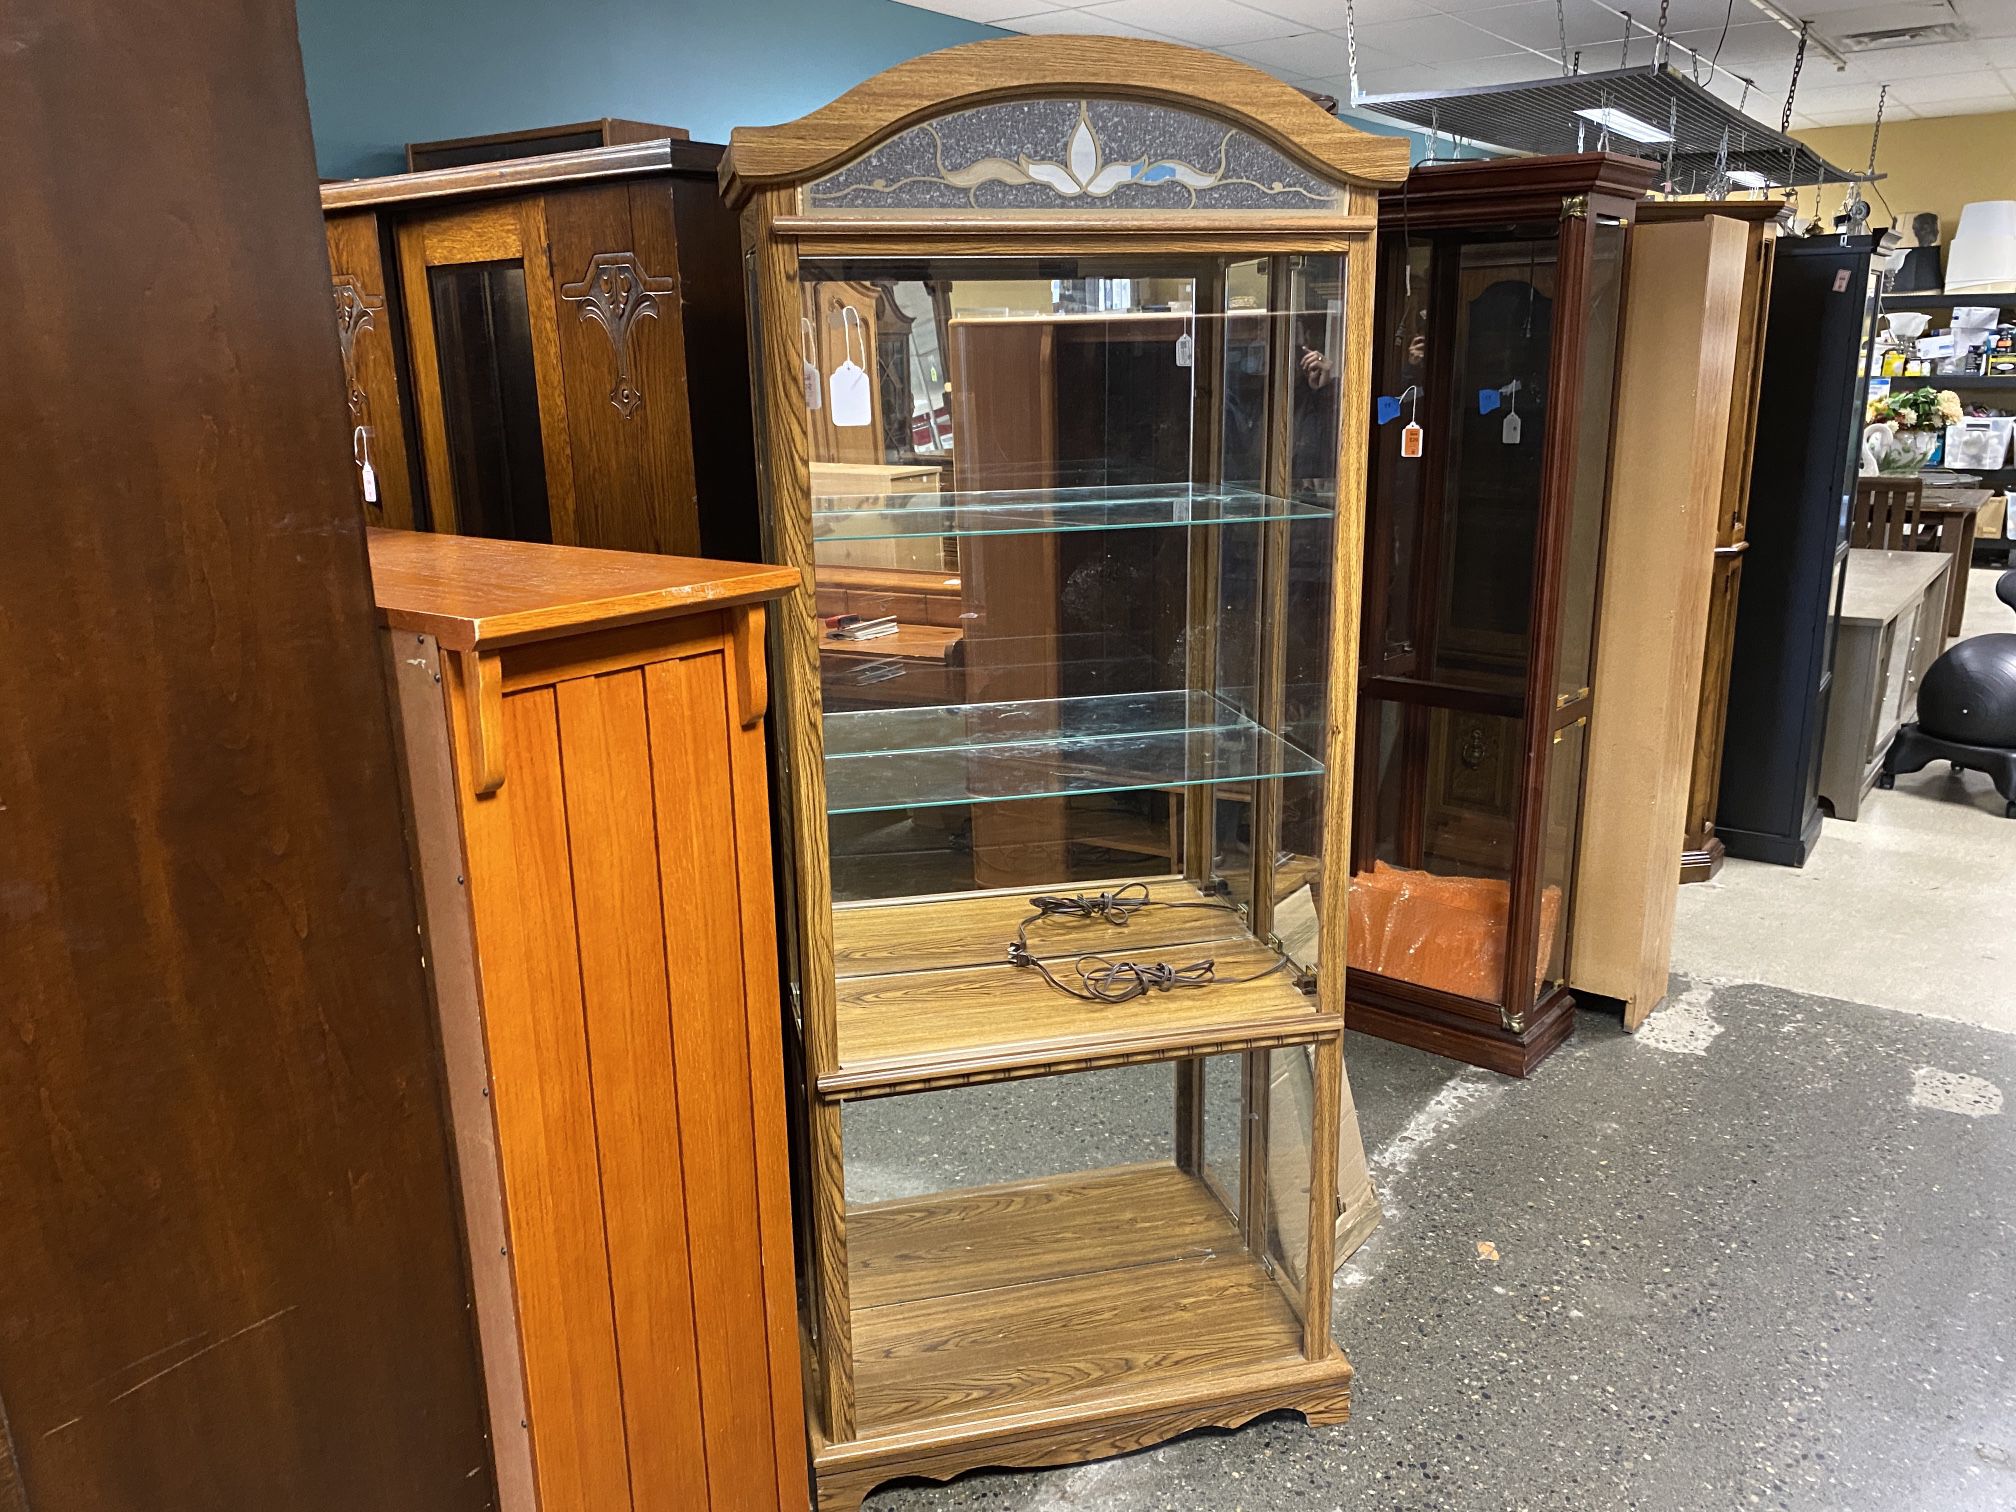 Curio Cabinet w/ Lights & 2 Glass Shelves (Missing 1 Glass Shelf)